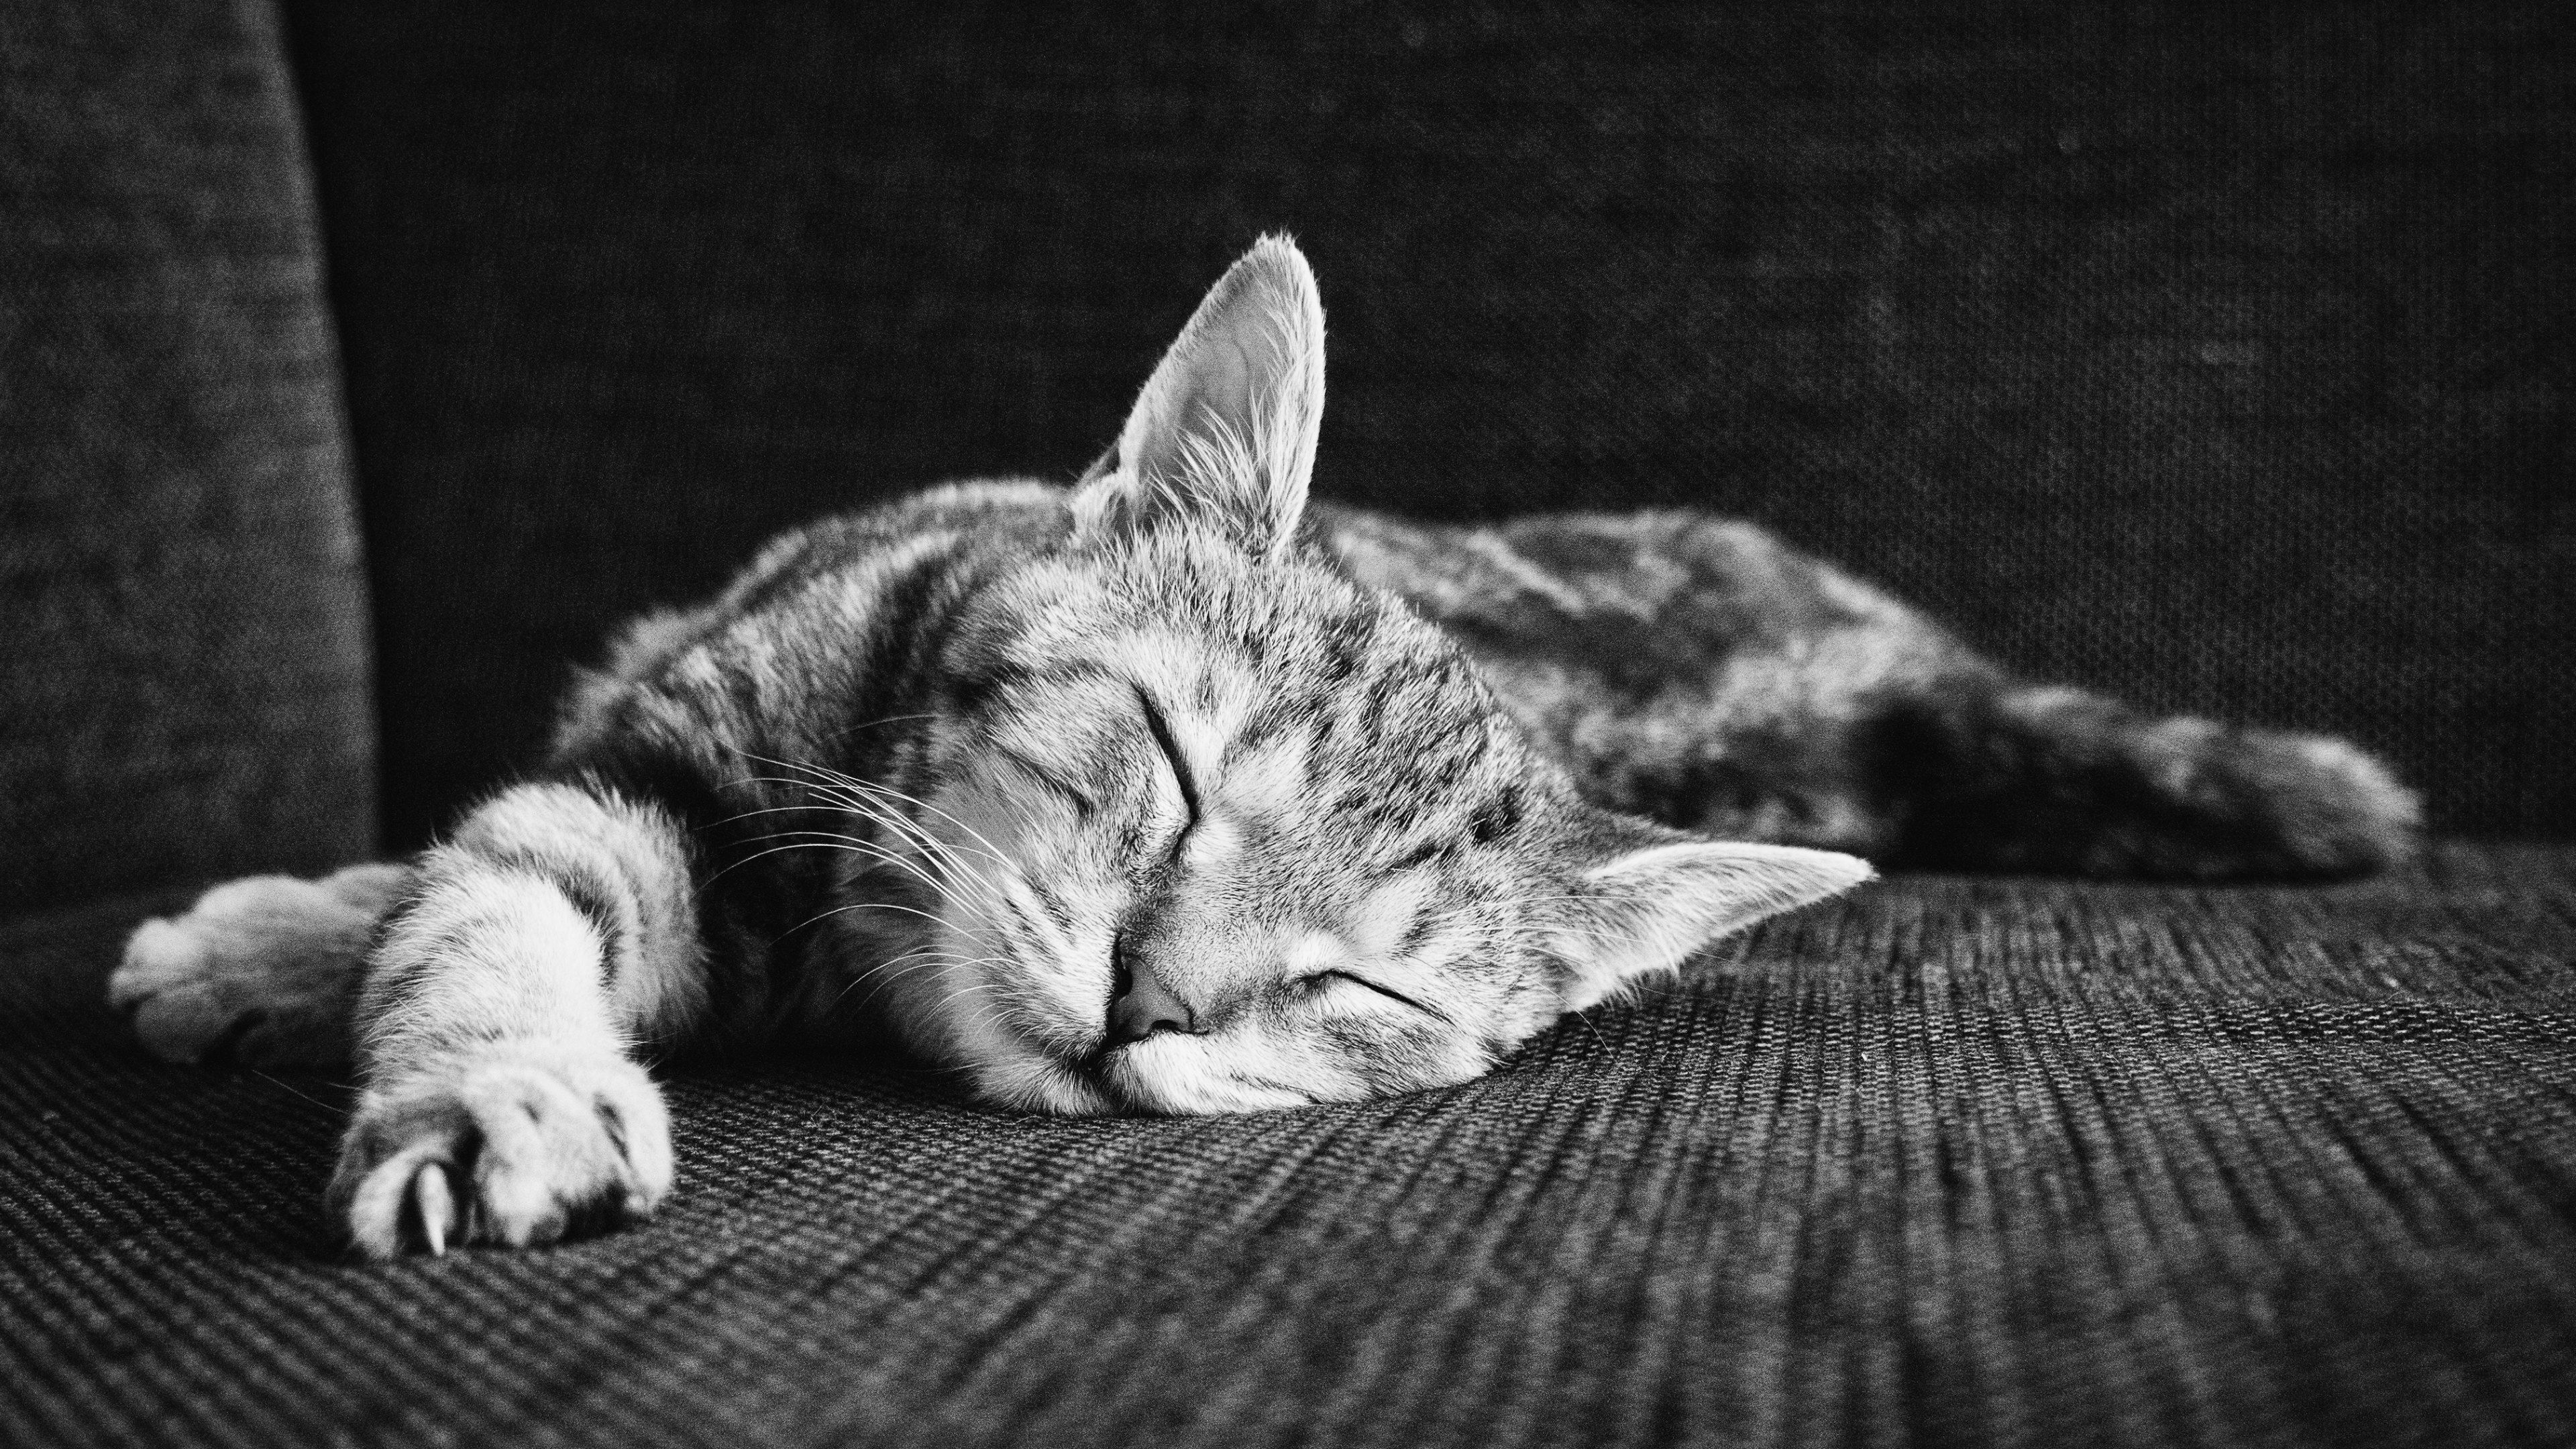 Zen Of Sleeping Kitten ultra hd wallpapers - Ultra High Definition ...